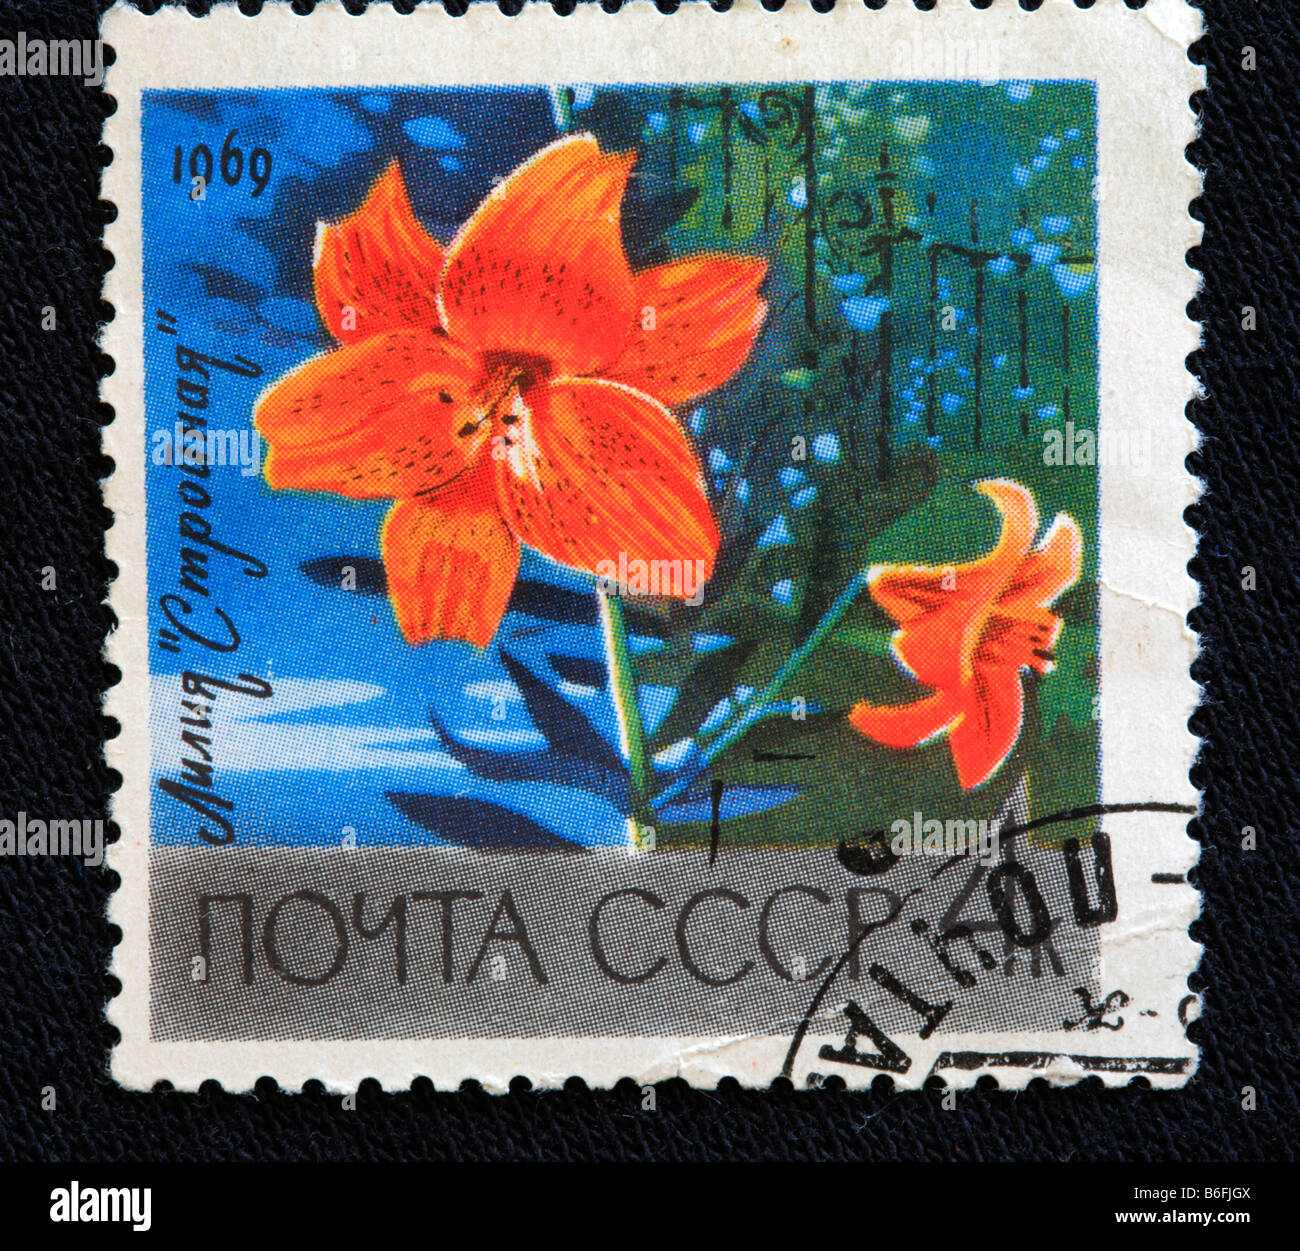 Tiger Lily (Lilium tigrinum, Lilium lancifolium), postage stamp, USSR, 1969 Stock Photo